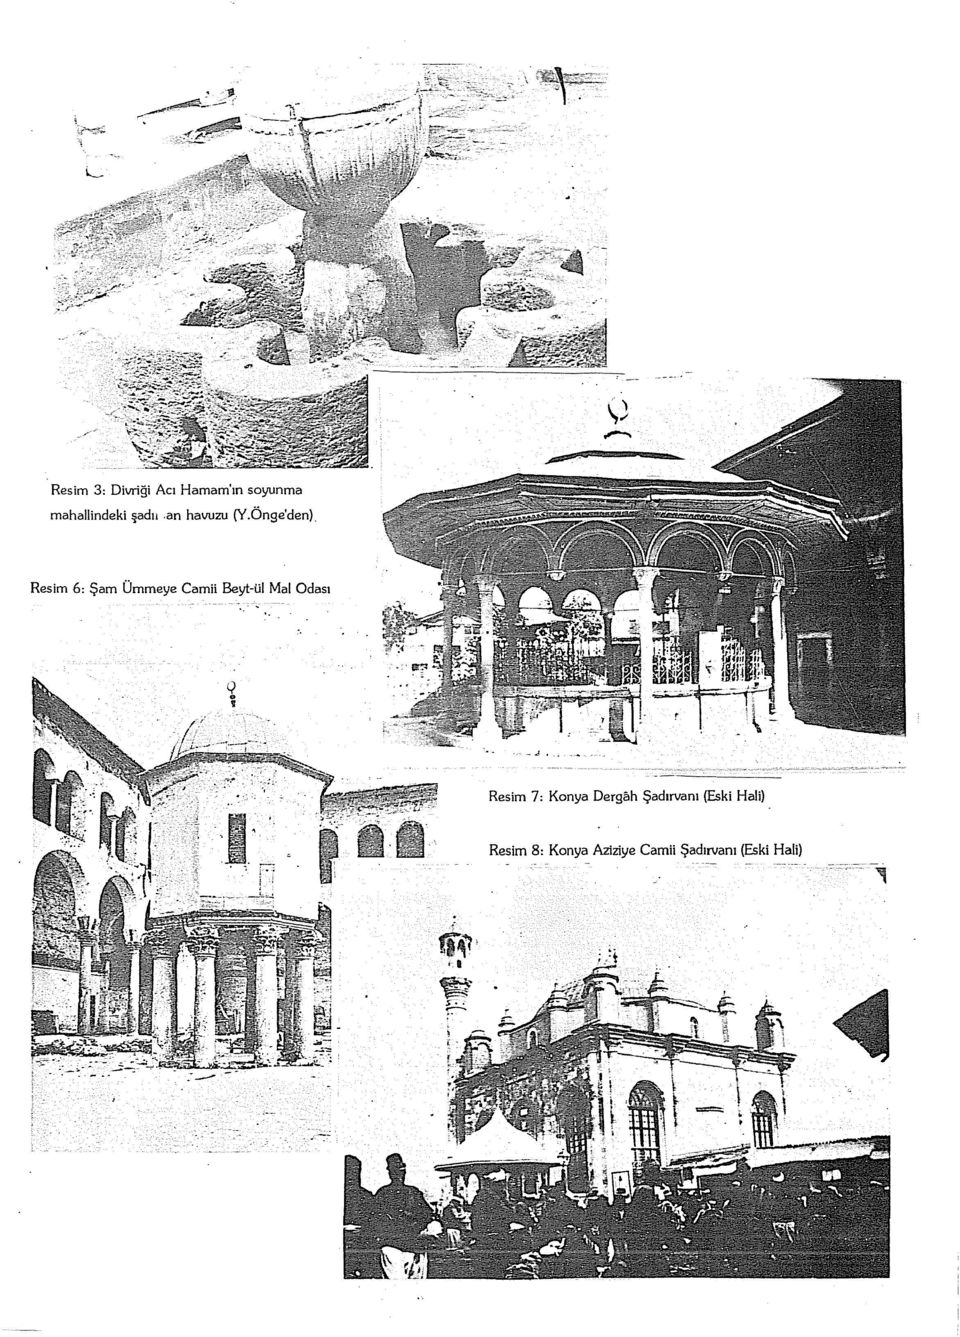 Resim 6: Şam Ümmeye Camii Beyt-ül Mal Odası Resim 7: Konya